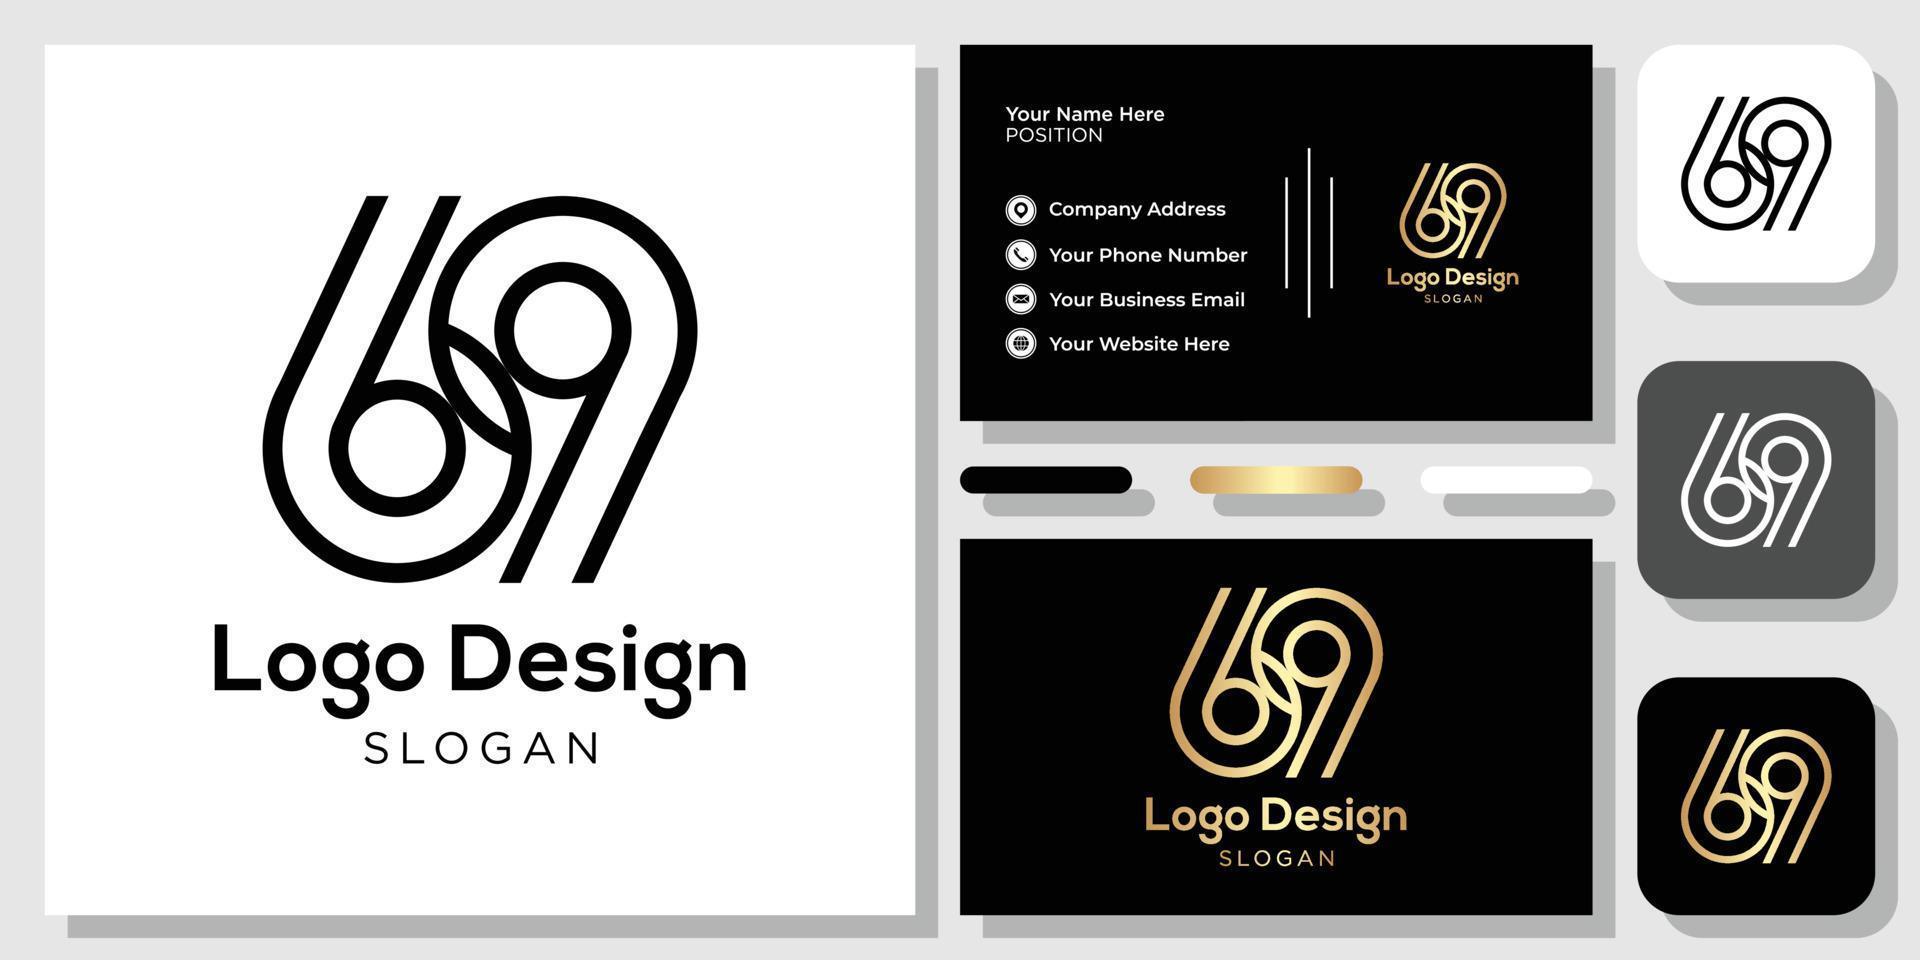 logo design numero 69 oro nero con modello di biglietto da visita vettore